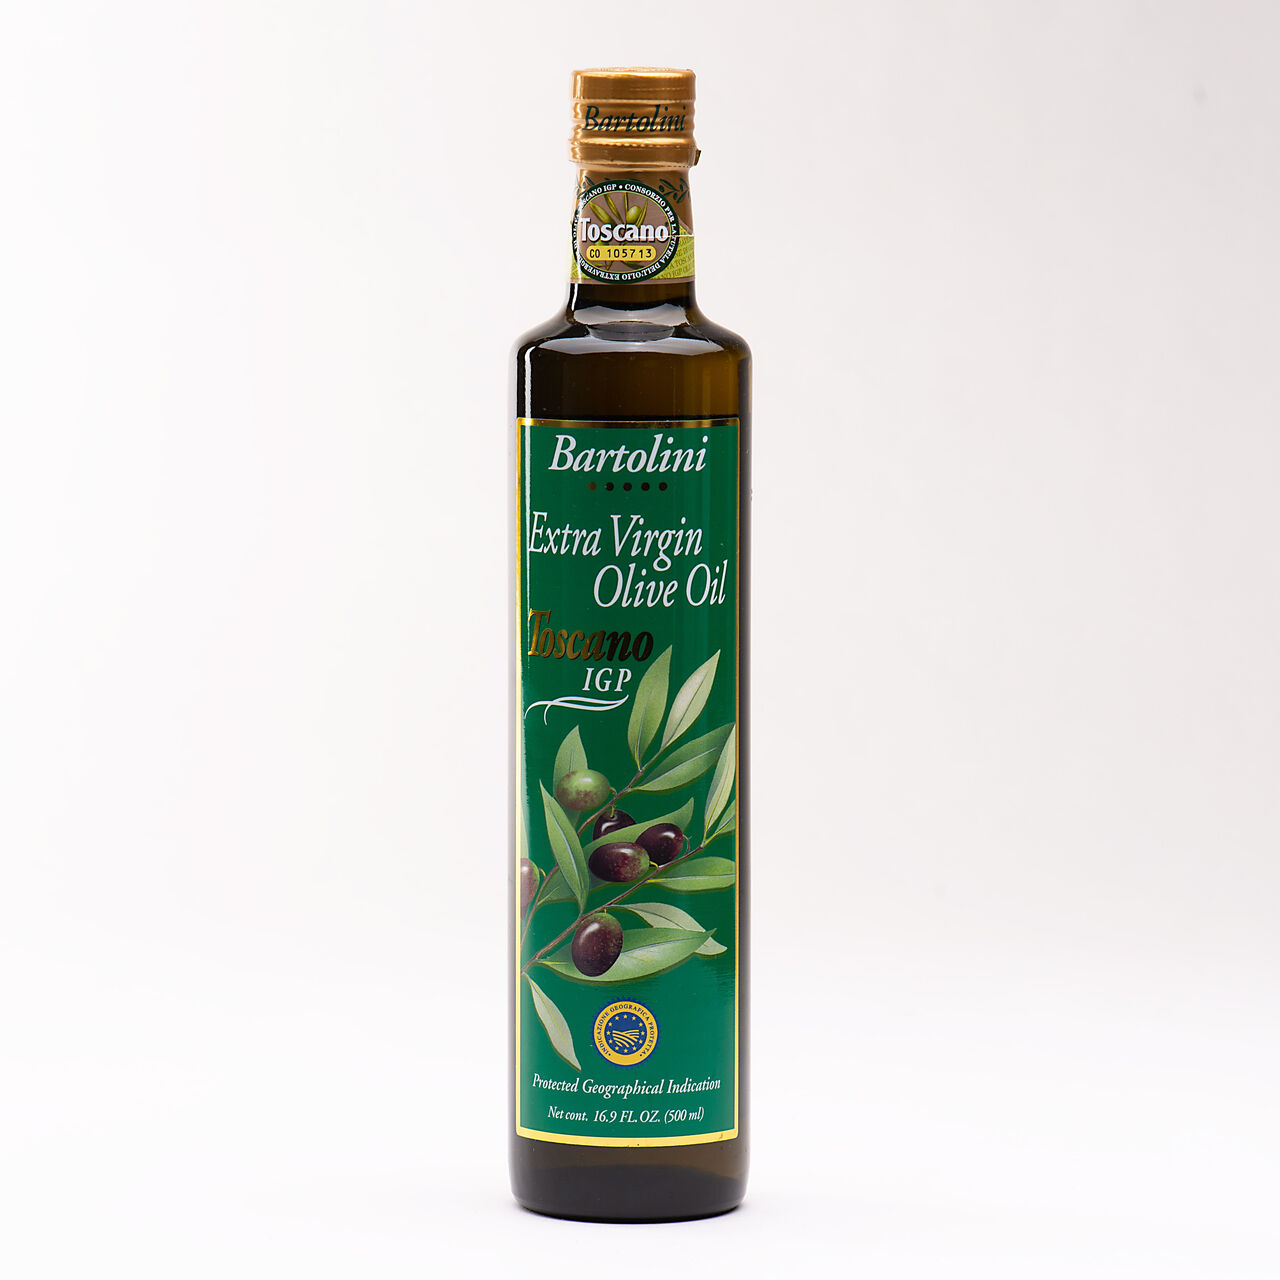 Bartolini Extra Virgin Olive Oil Toscano I.G.P. - 16.9oz., , large image number 0